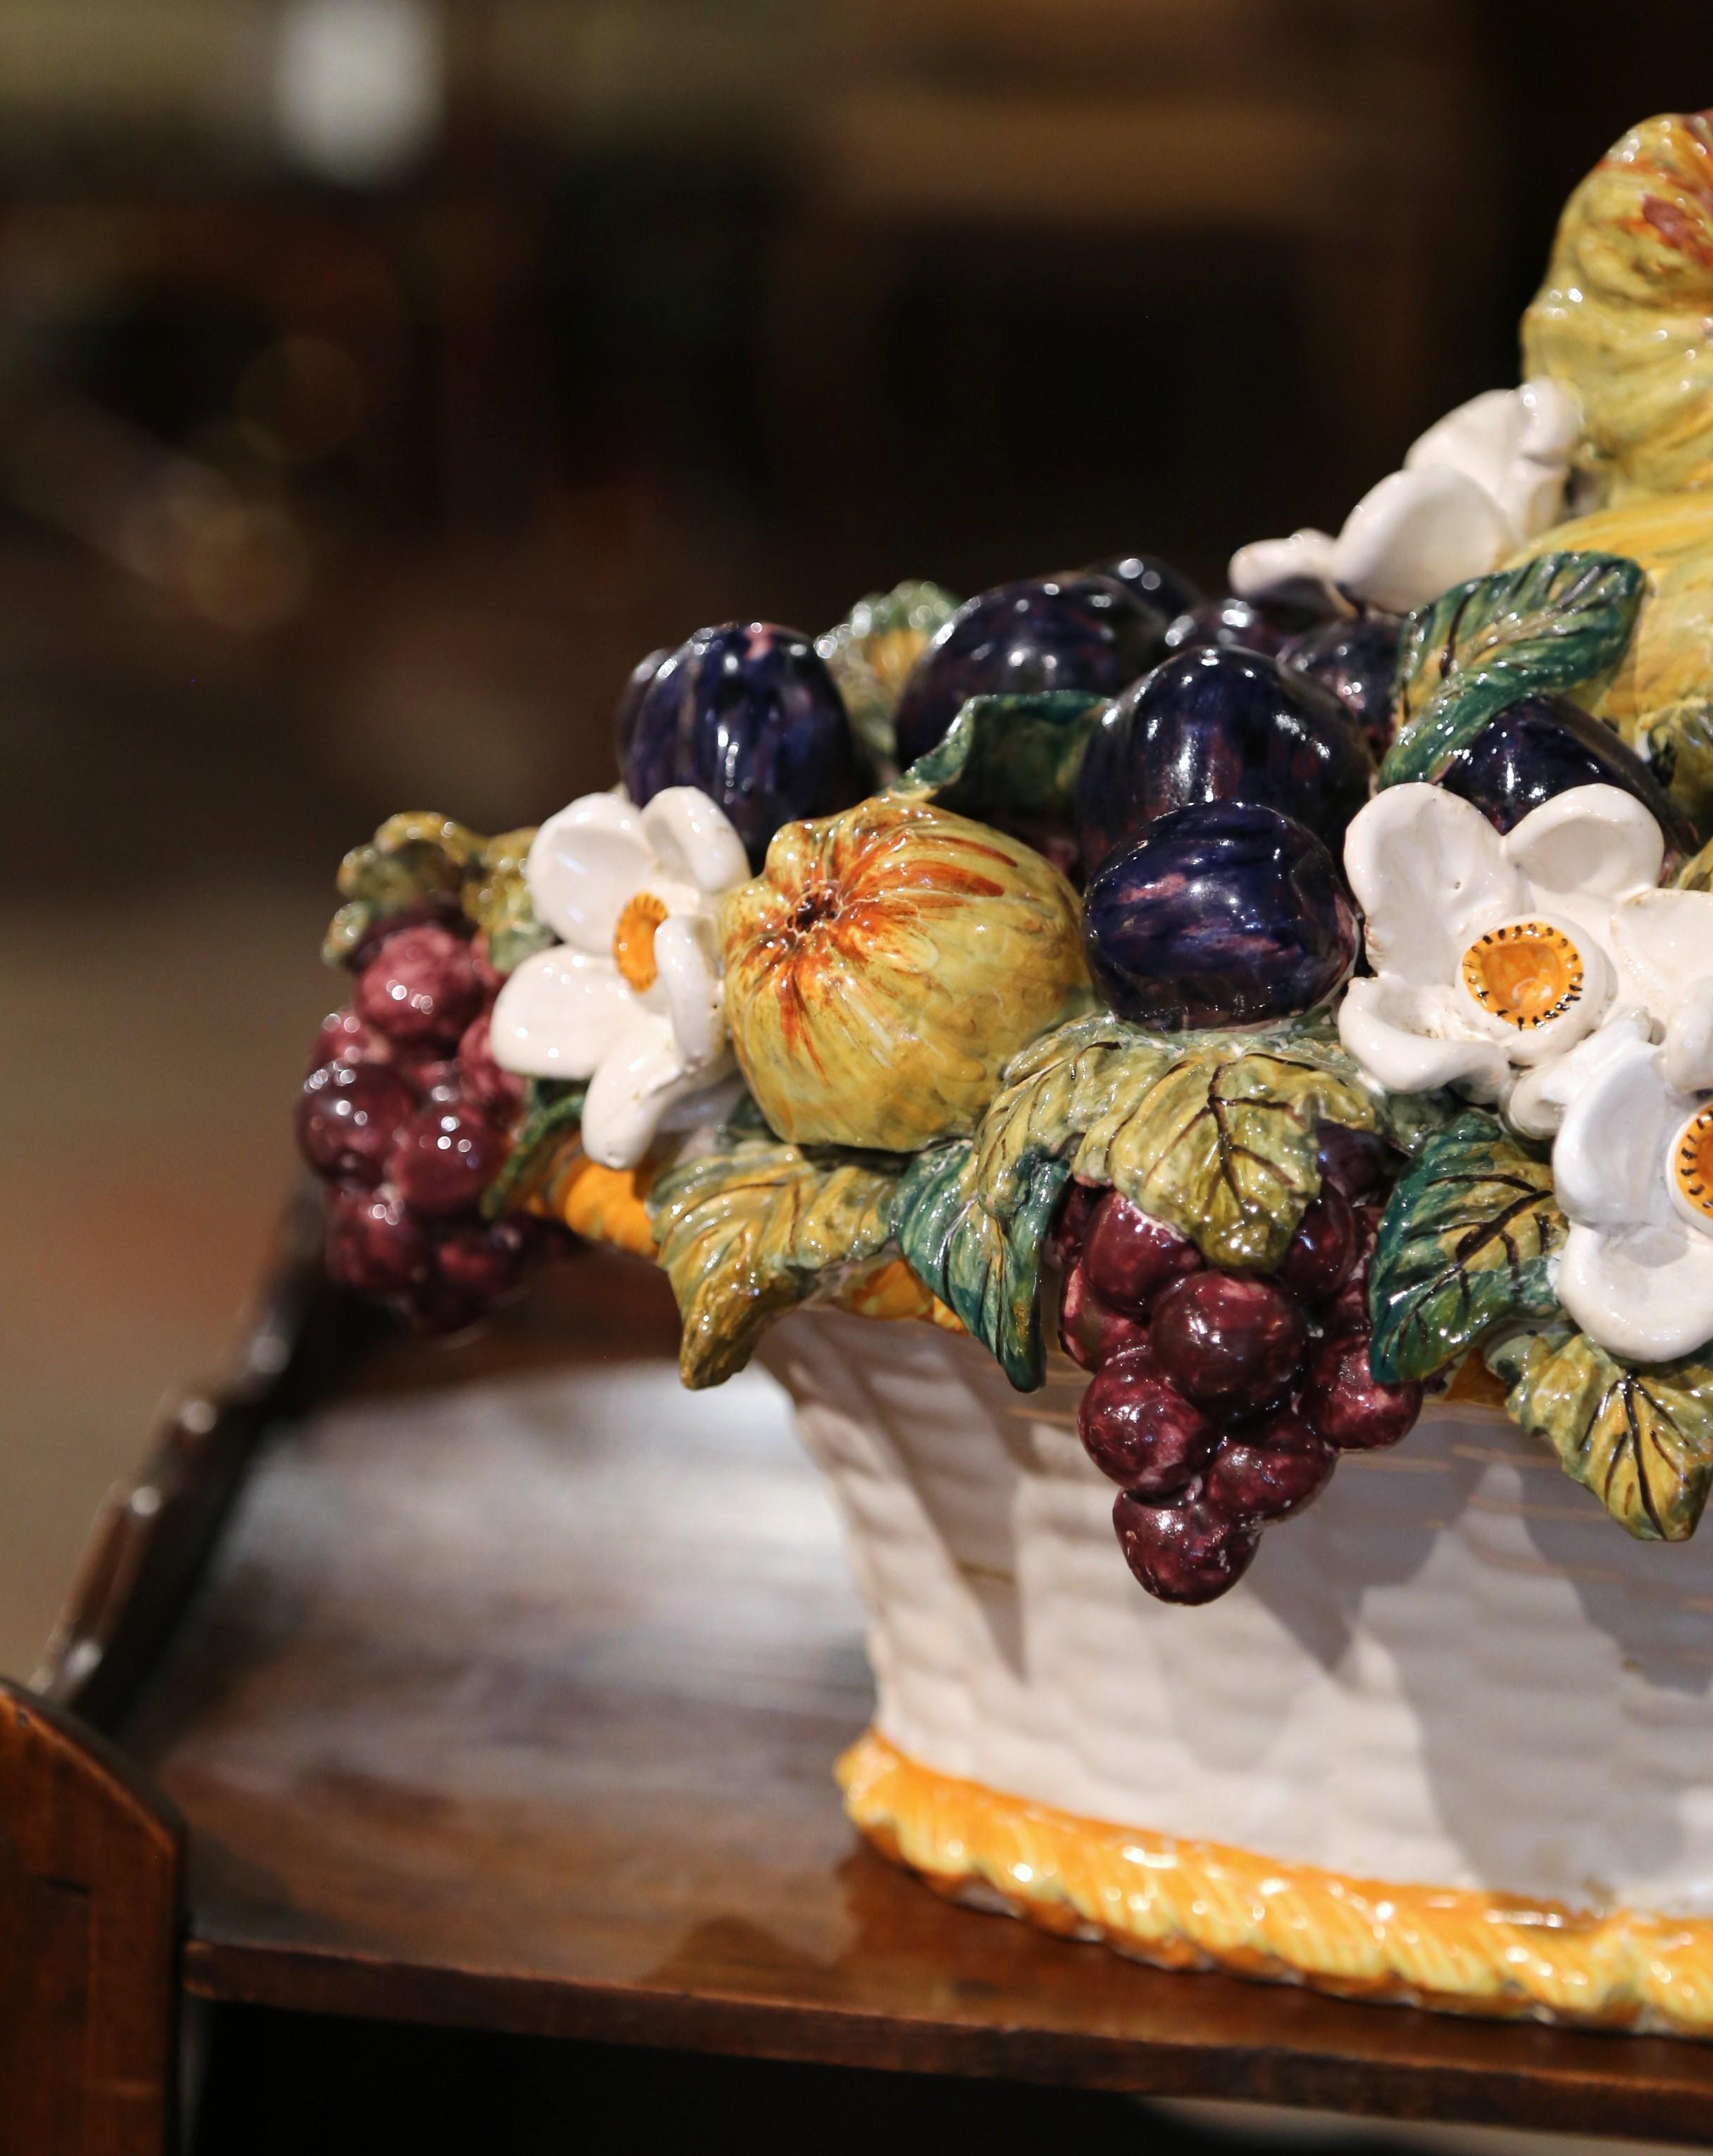 Décorez une table avec cette composition colorée de panier en majolique. Fabriqué en France vers 1960, ce centre de table présente un assortiment réaliste de fruits et de légumes en haut-relief à l'intérieur d'un panier blanc décoré d'un motif de